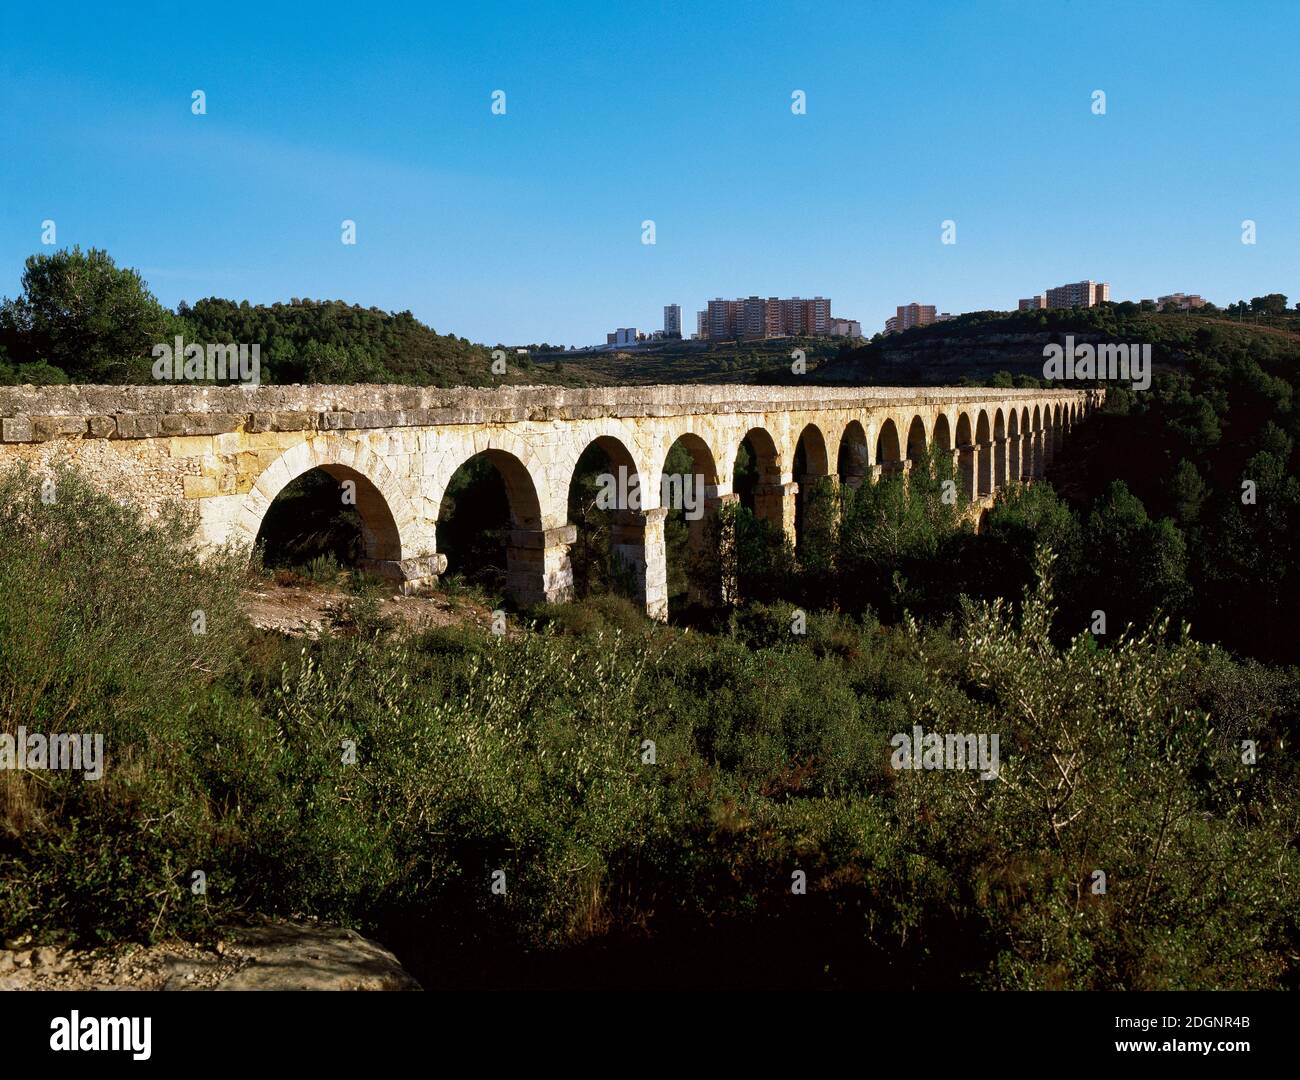 Spanien, Katalonien. Aquädukt von Tarragona, auch bekannt als die Brücke von Ferreres oder Pont del Diable. Es wurde während der Zeit von Kaiser Augustus (63 v. Chr.-14 n. Chr.) gebaut, um die Stadt Tarragona vom nahe gelegenen Fluss Francolí mit Wasser zu versorgen. UNESCO-Weltkulturerbe. Stockfoto